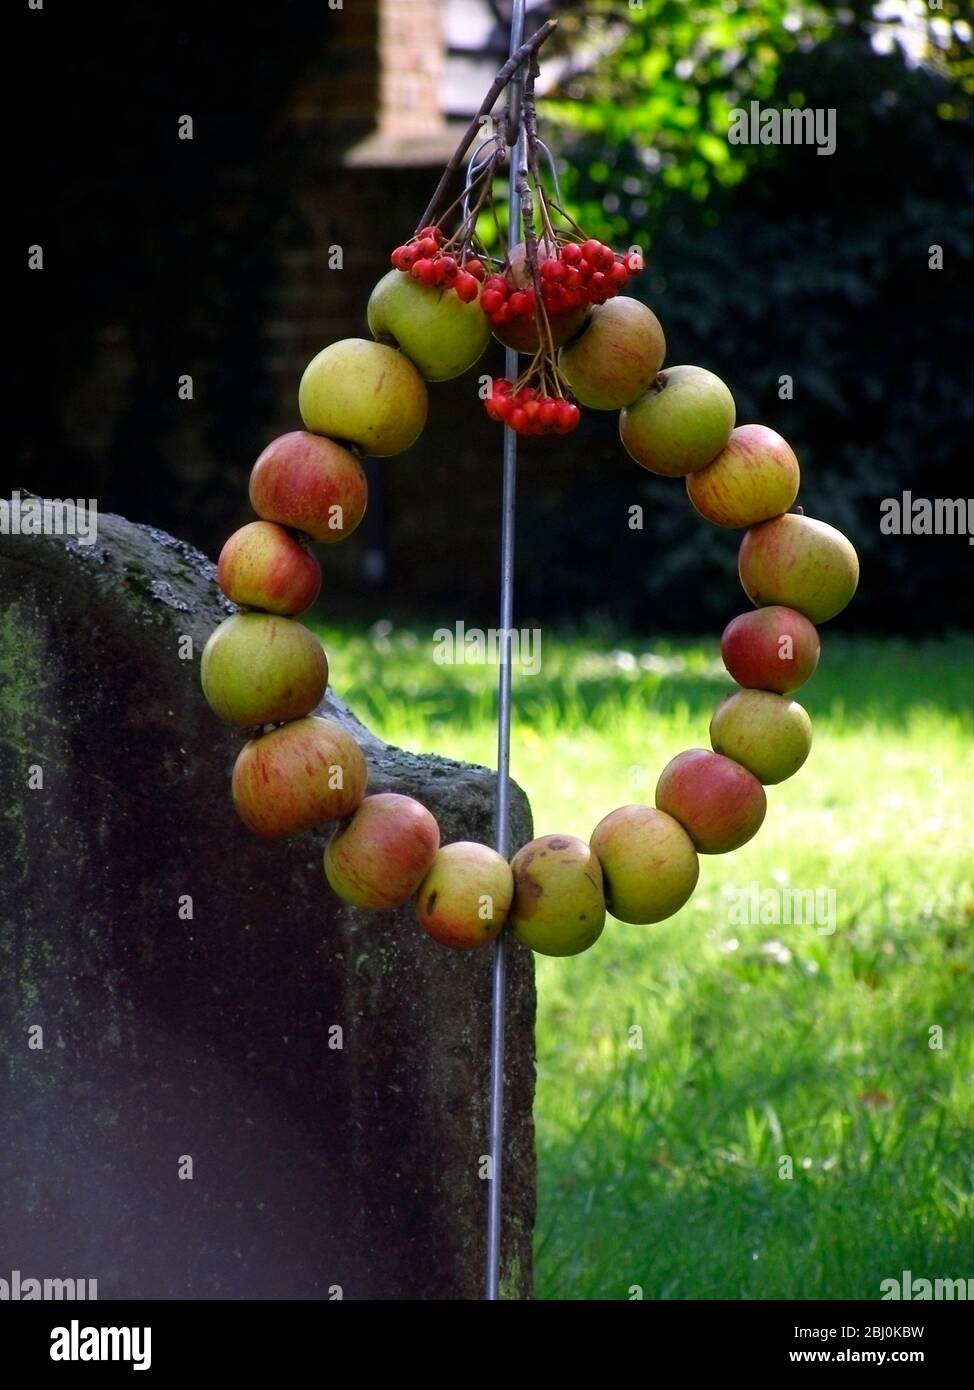 Erntekranz von roten Äpfeln auf Draht in einen Kreis aufgereiht und mit Trauben von Beeren verziert, auf dem Land Kirchhof. Teil eines Blumenfestivals Stockfoto